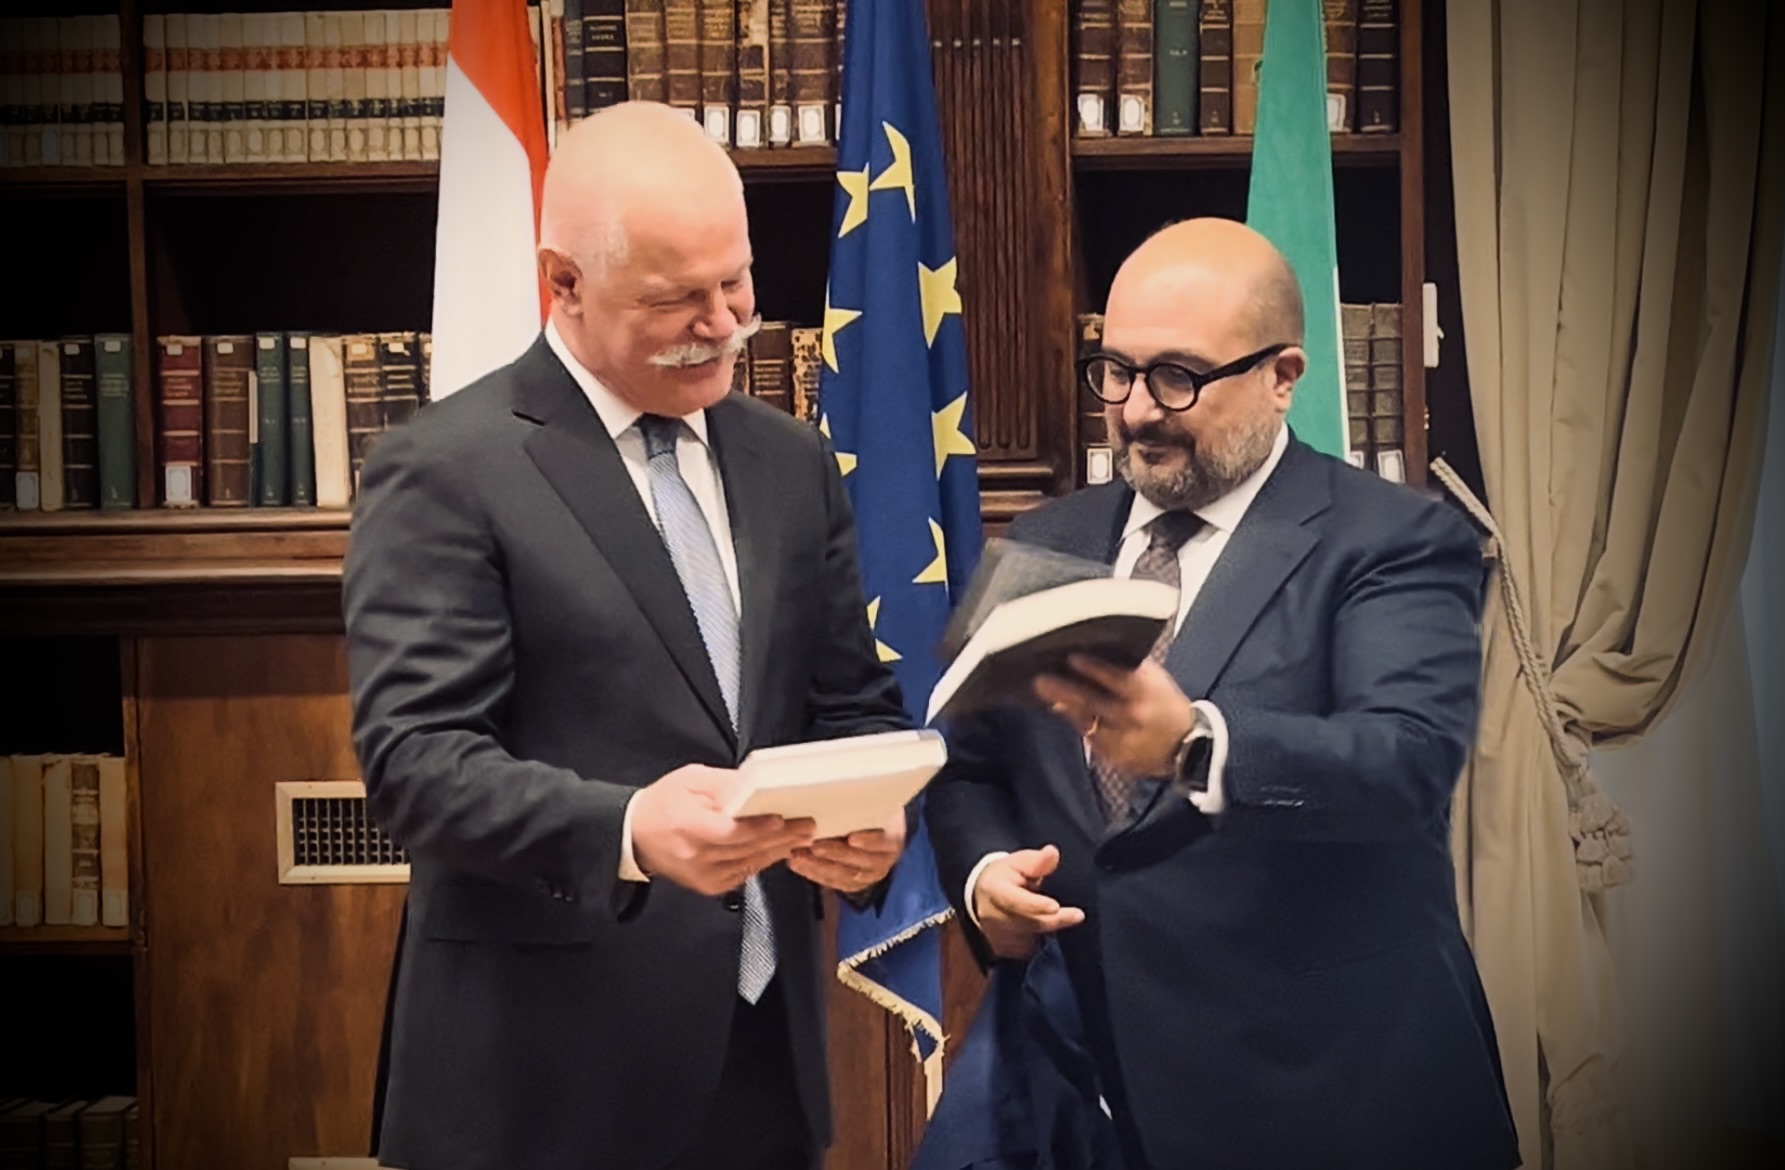 Zwei Jahrestage im Blickfeld der italienisch-ungarischen Zusammenarbeit